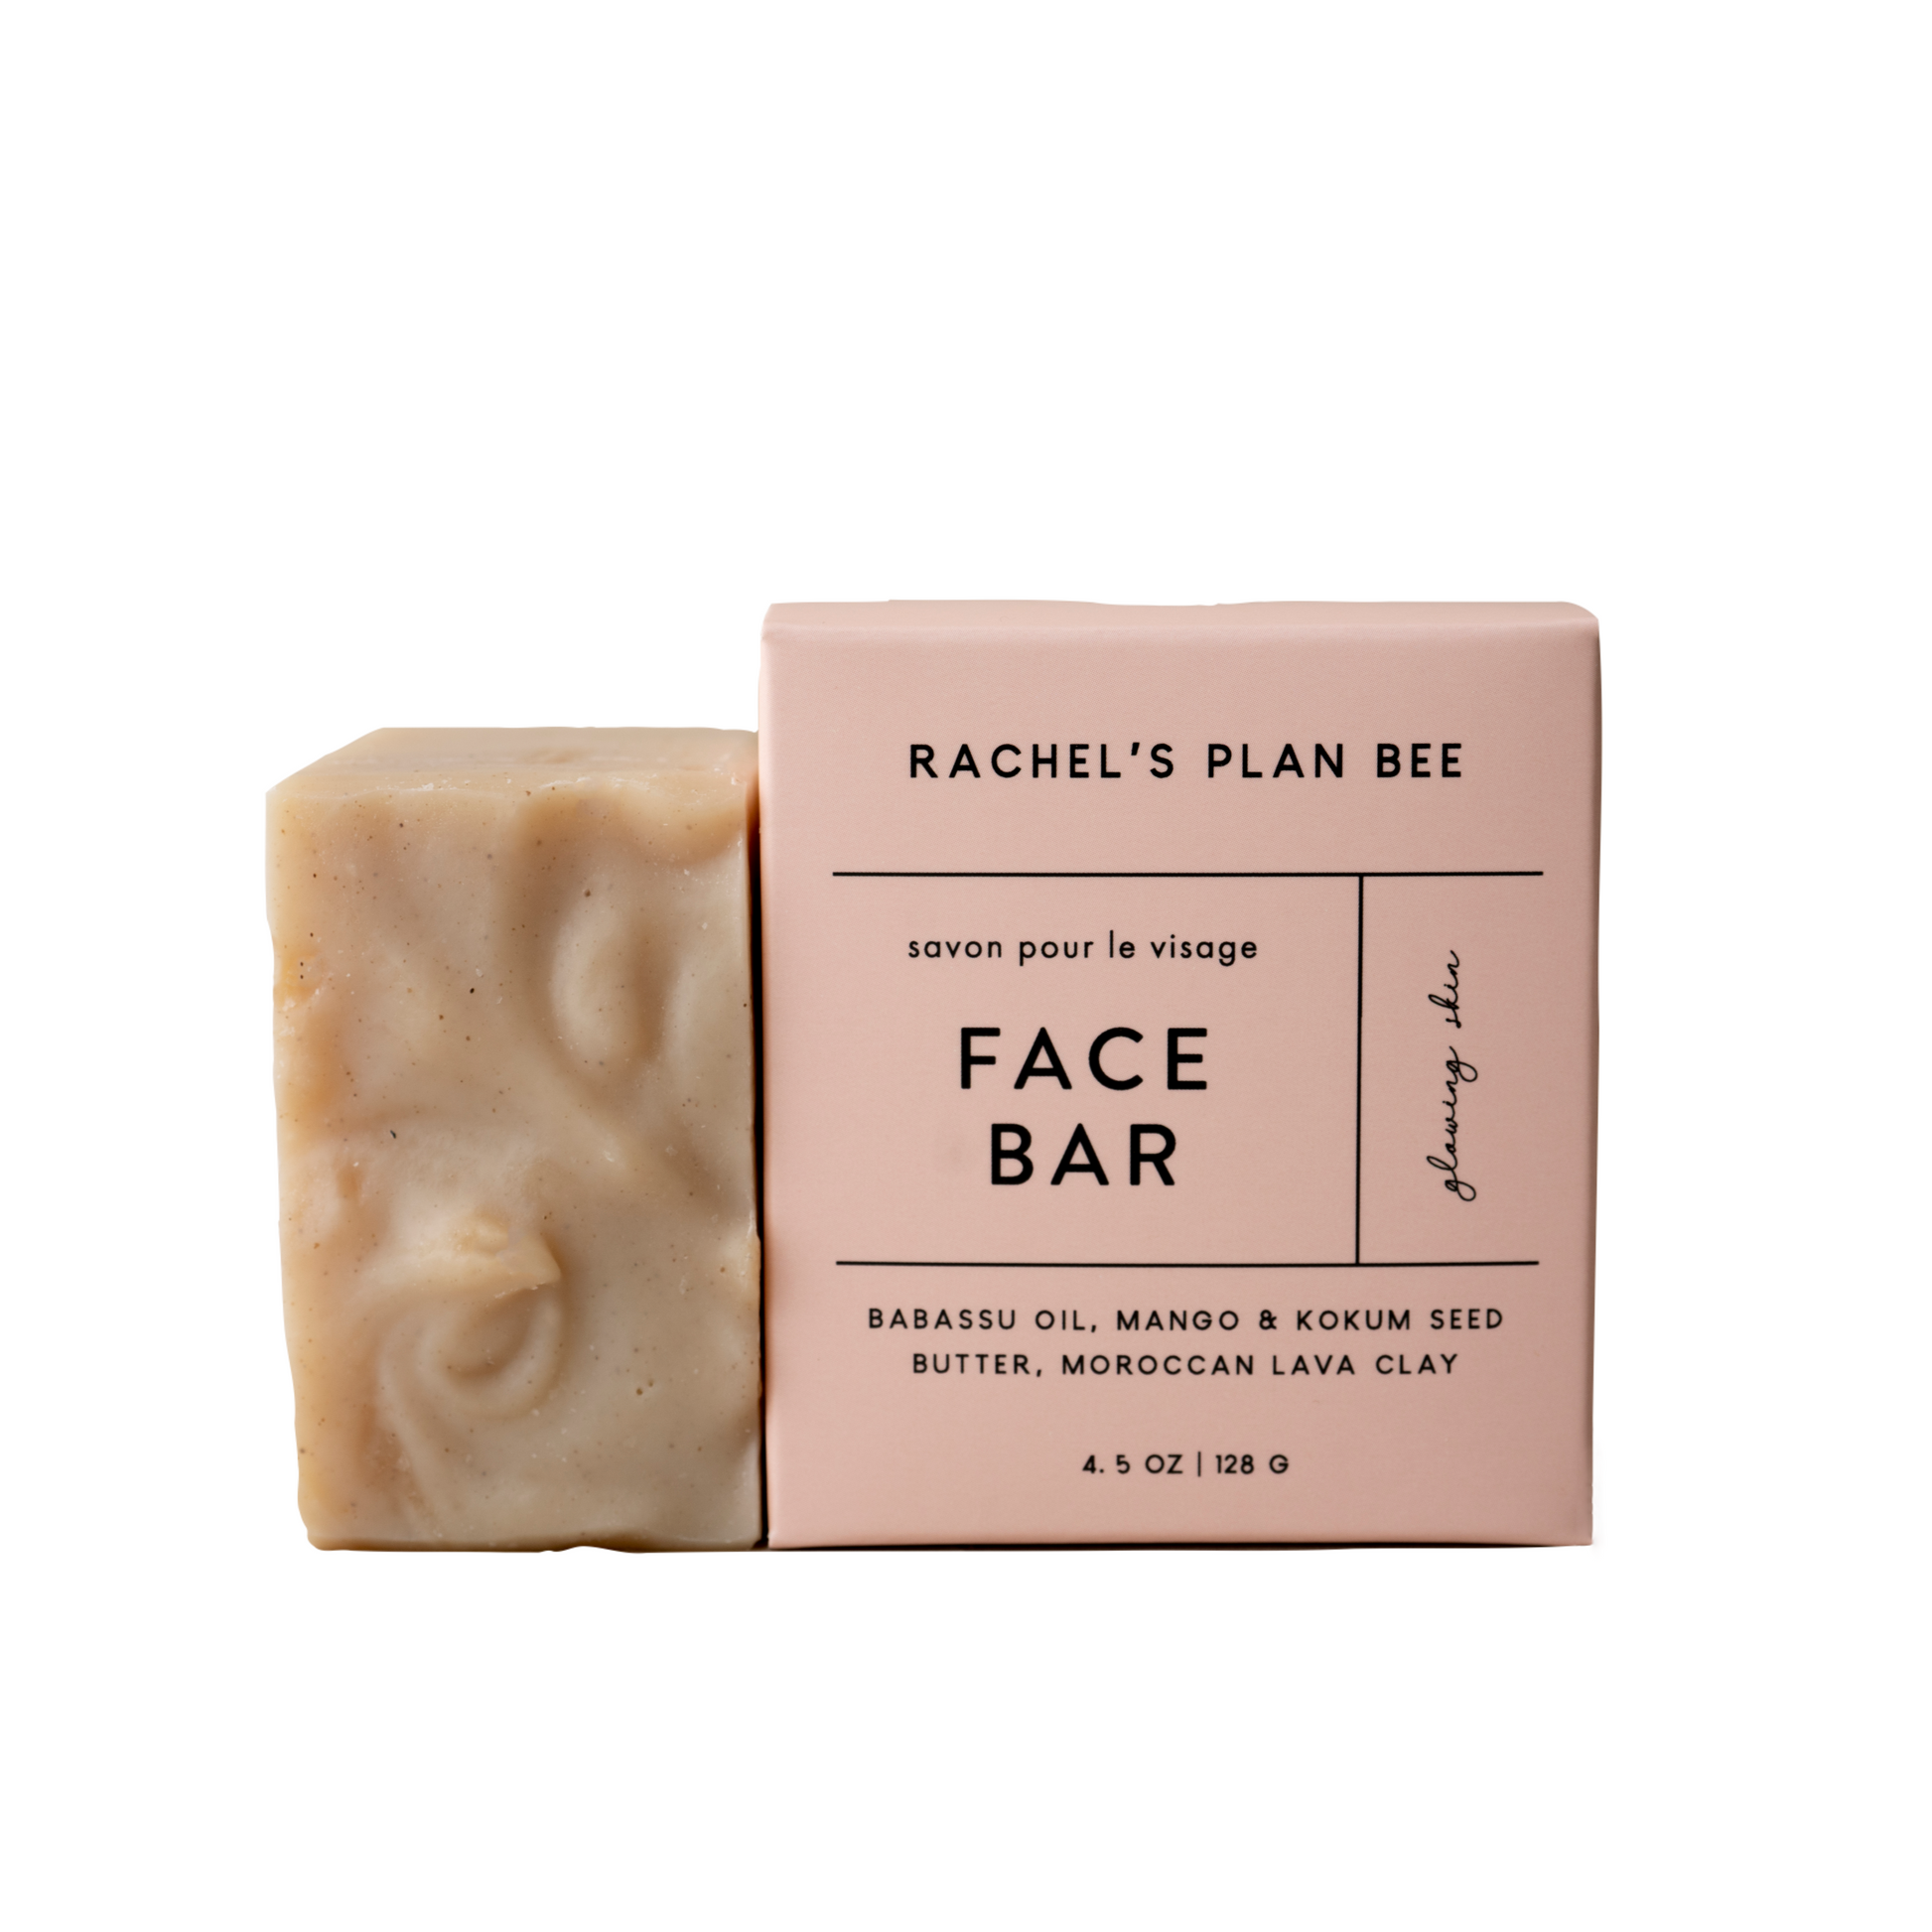 RACHEL'S PLAN BEE Face Bar